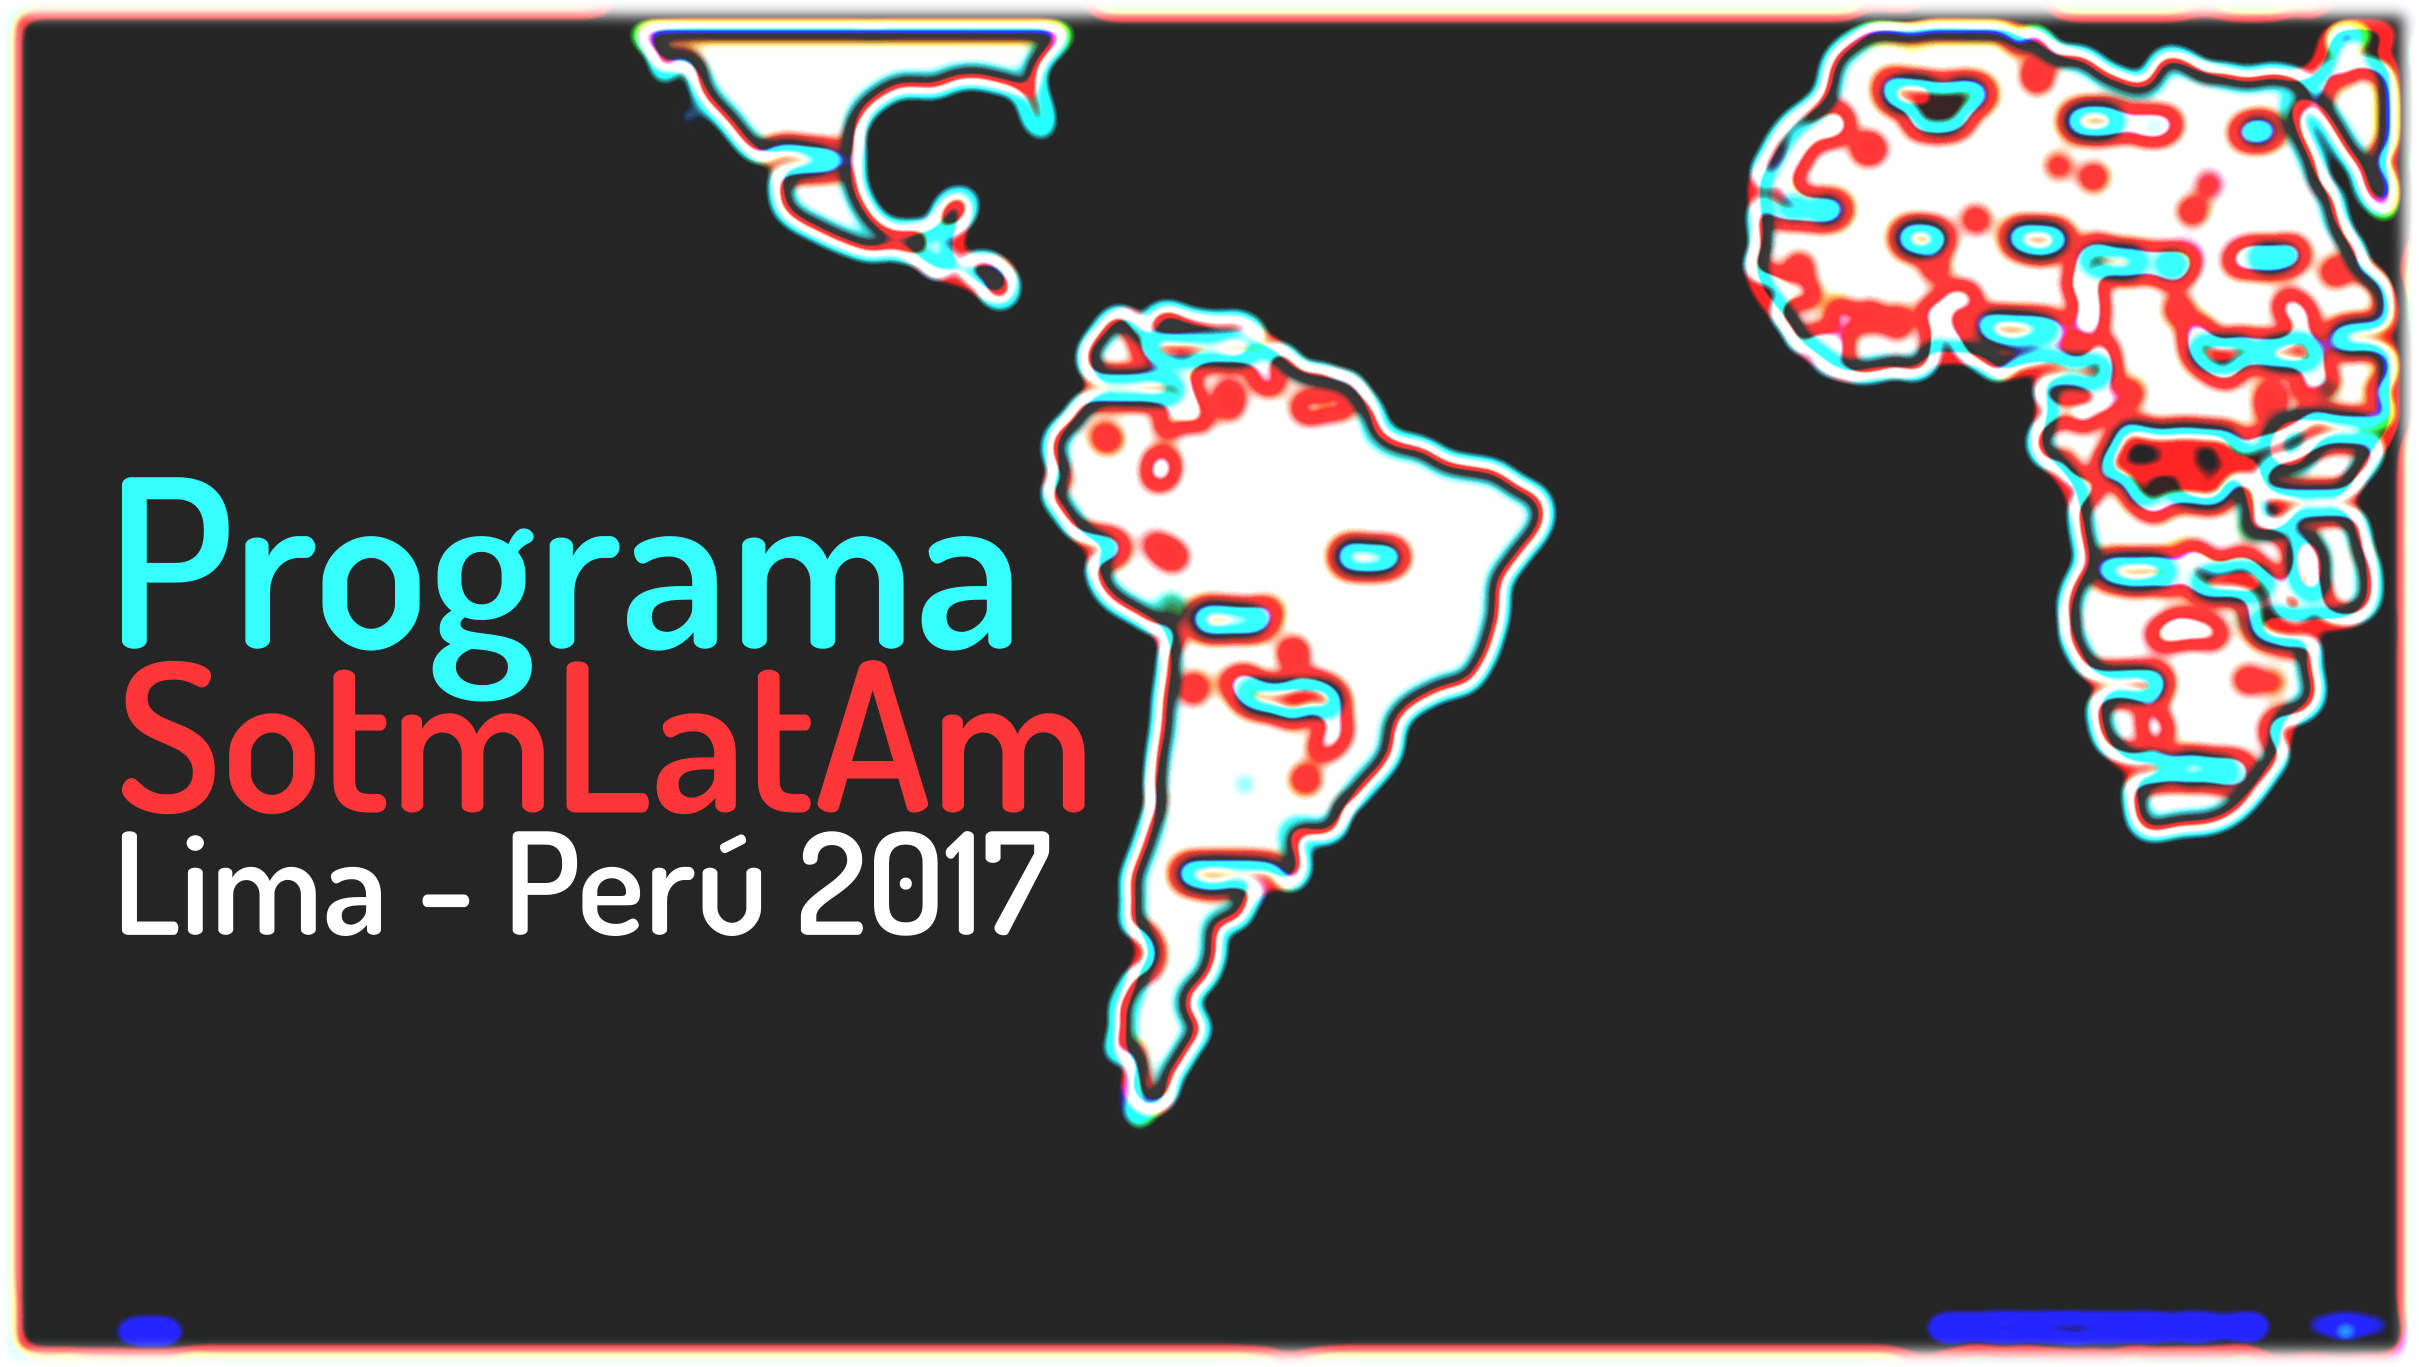 Programa de charlas, talleres y actividades del SotmLatAm 2017